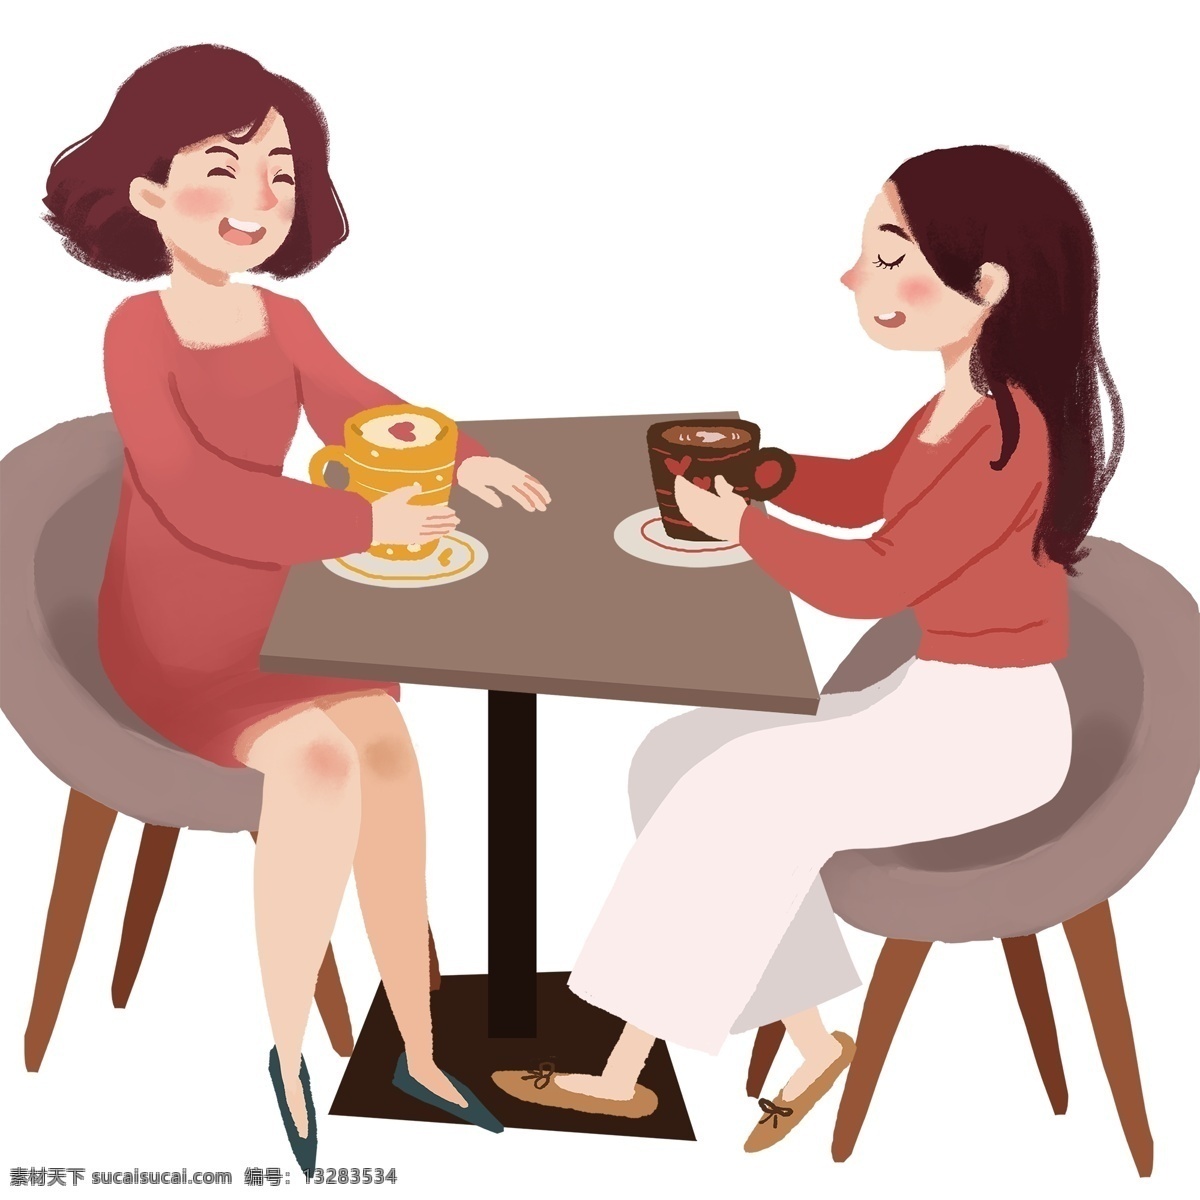 一起 喝 咖啡 聊天 闺 蜜 俩 手绘 卡通 插画 闺蜜 下午茶